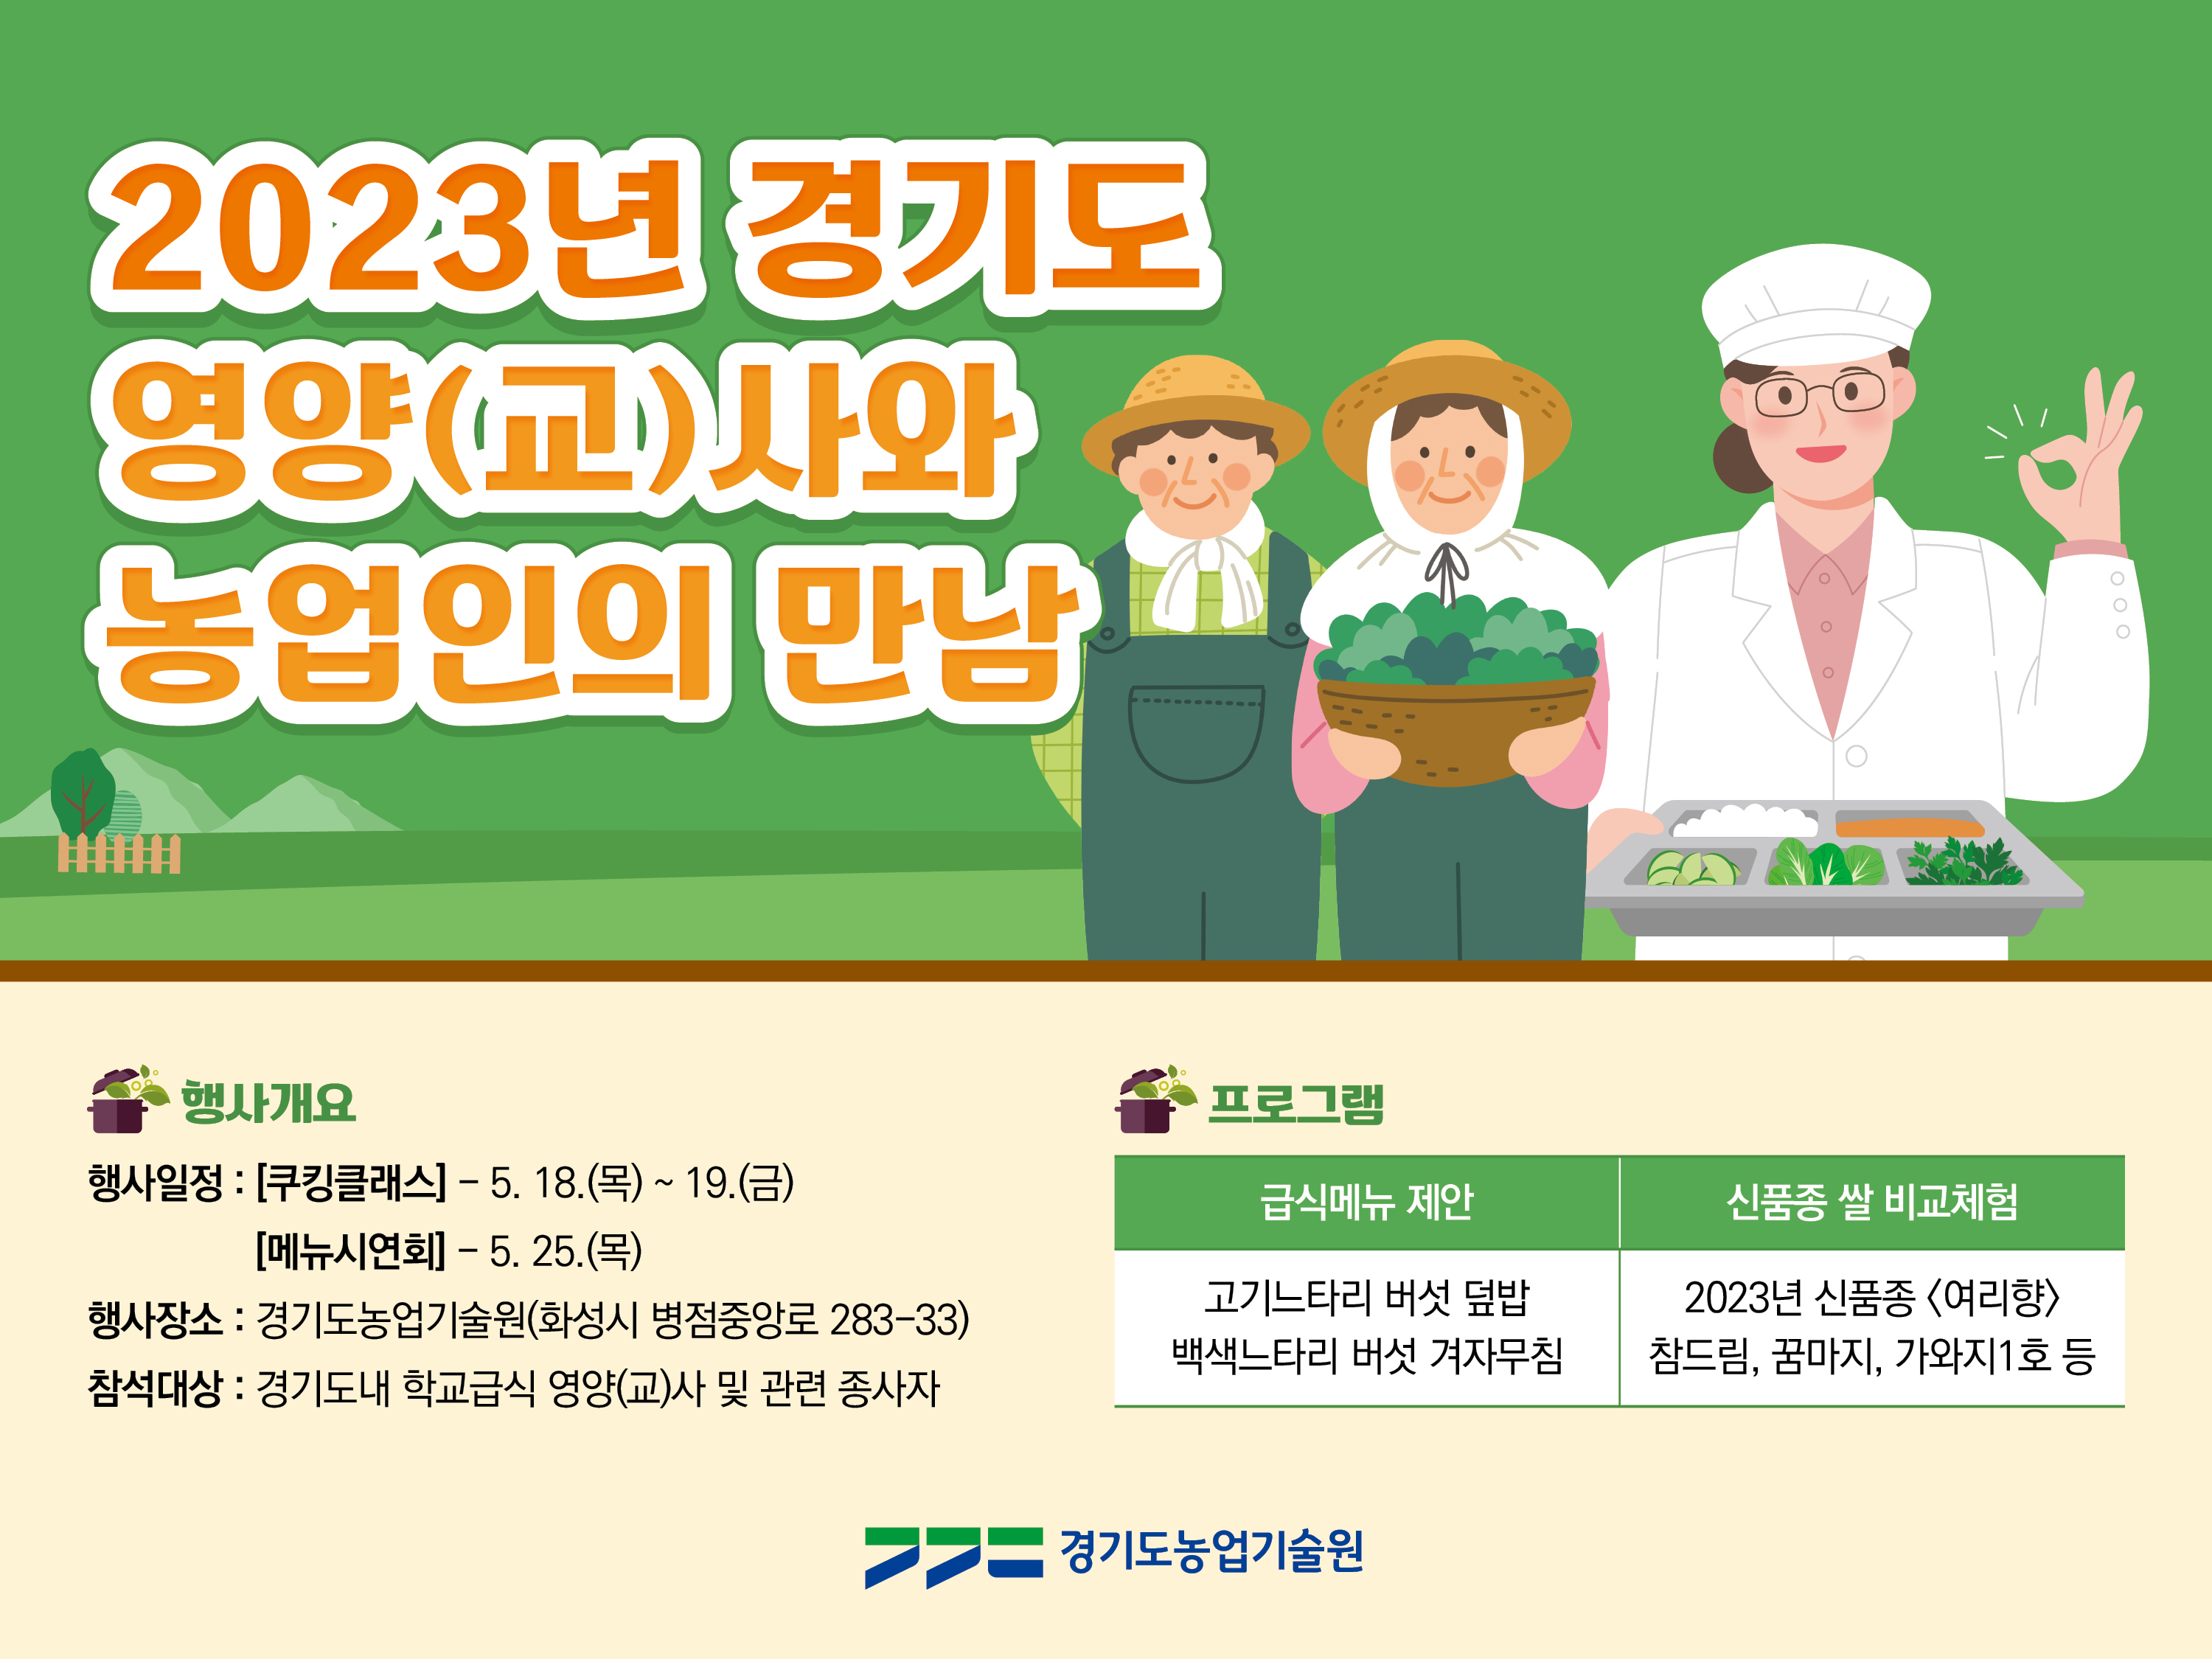 경기도농업기술원_[웹포스터]  2023년 경기도 영양(교)사와 농업인의 만남_PPT (1)